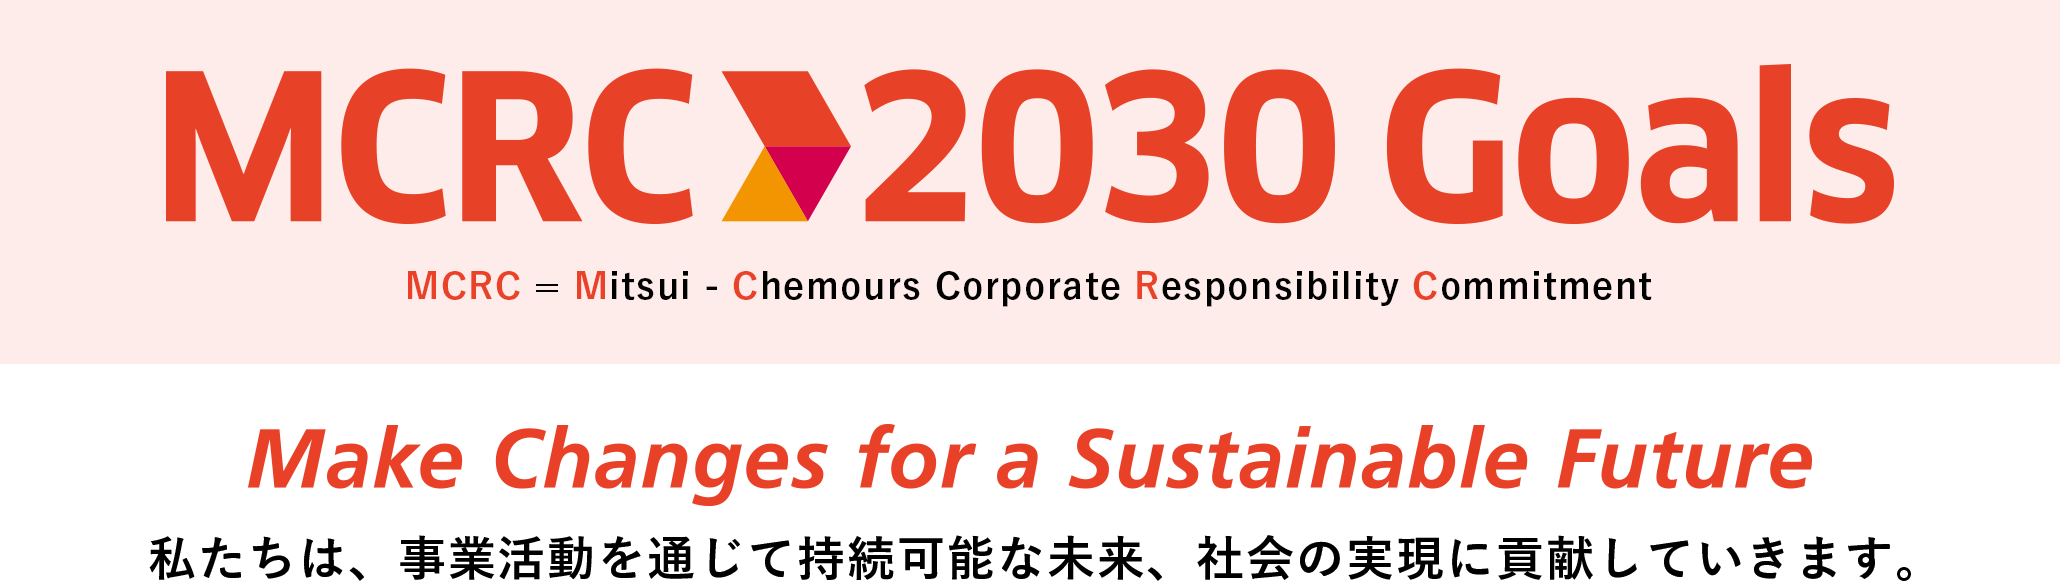 MCRC 2030 Goals